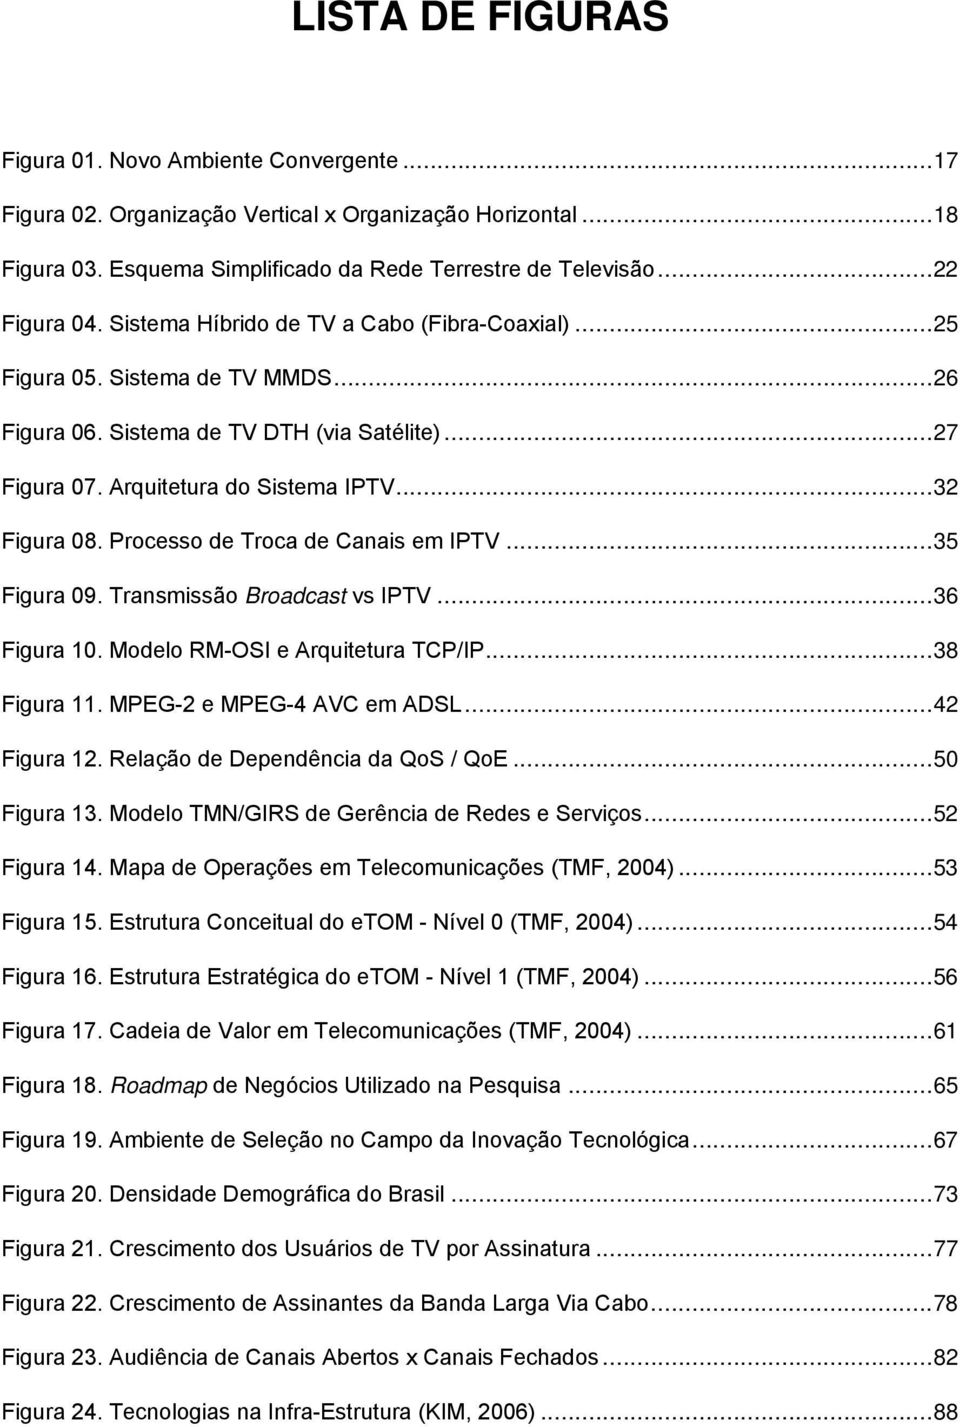 Processo de Troca de Canais em IPTV...35 Figura 09. Transmissão Broadcast vs IPTV...36 Figura 10. Modelo RM-OSI e Arquitetura TCP/IP...38 Figura 11. MPEG-2 e MPEG-4 AVC em ADSL...42 Figura 12.